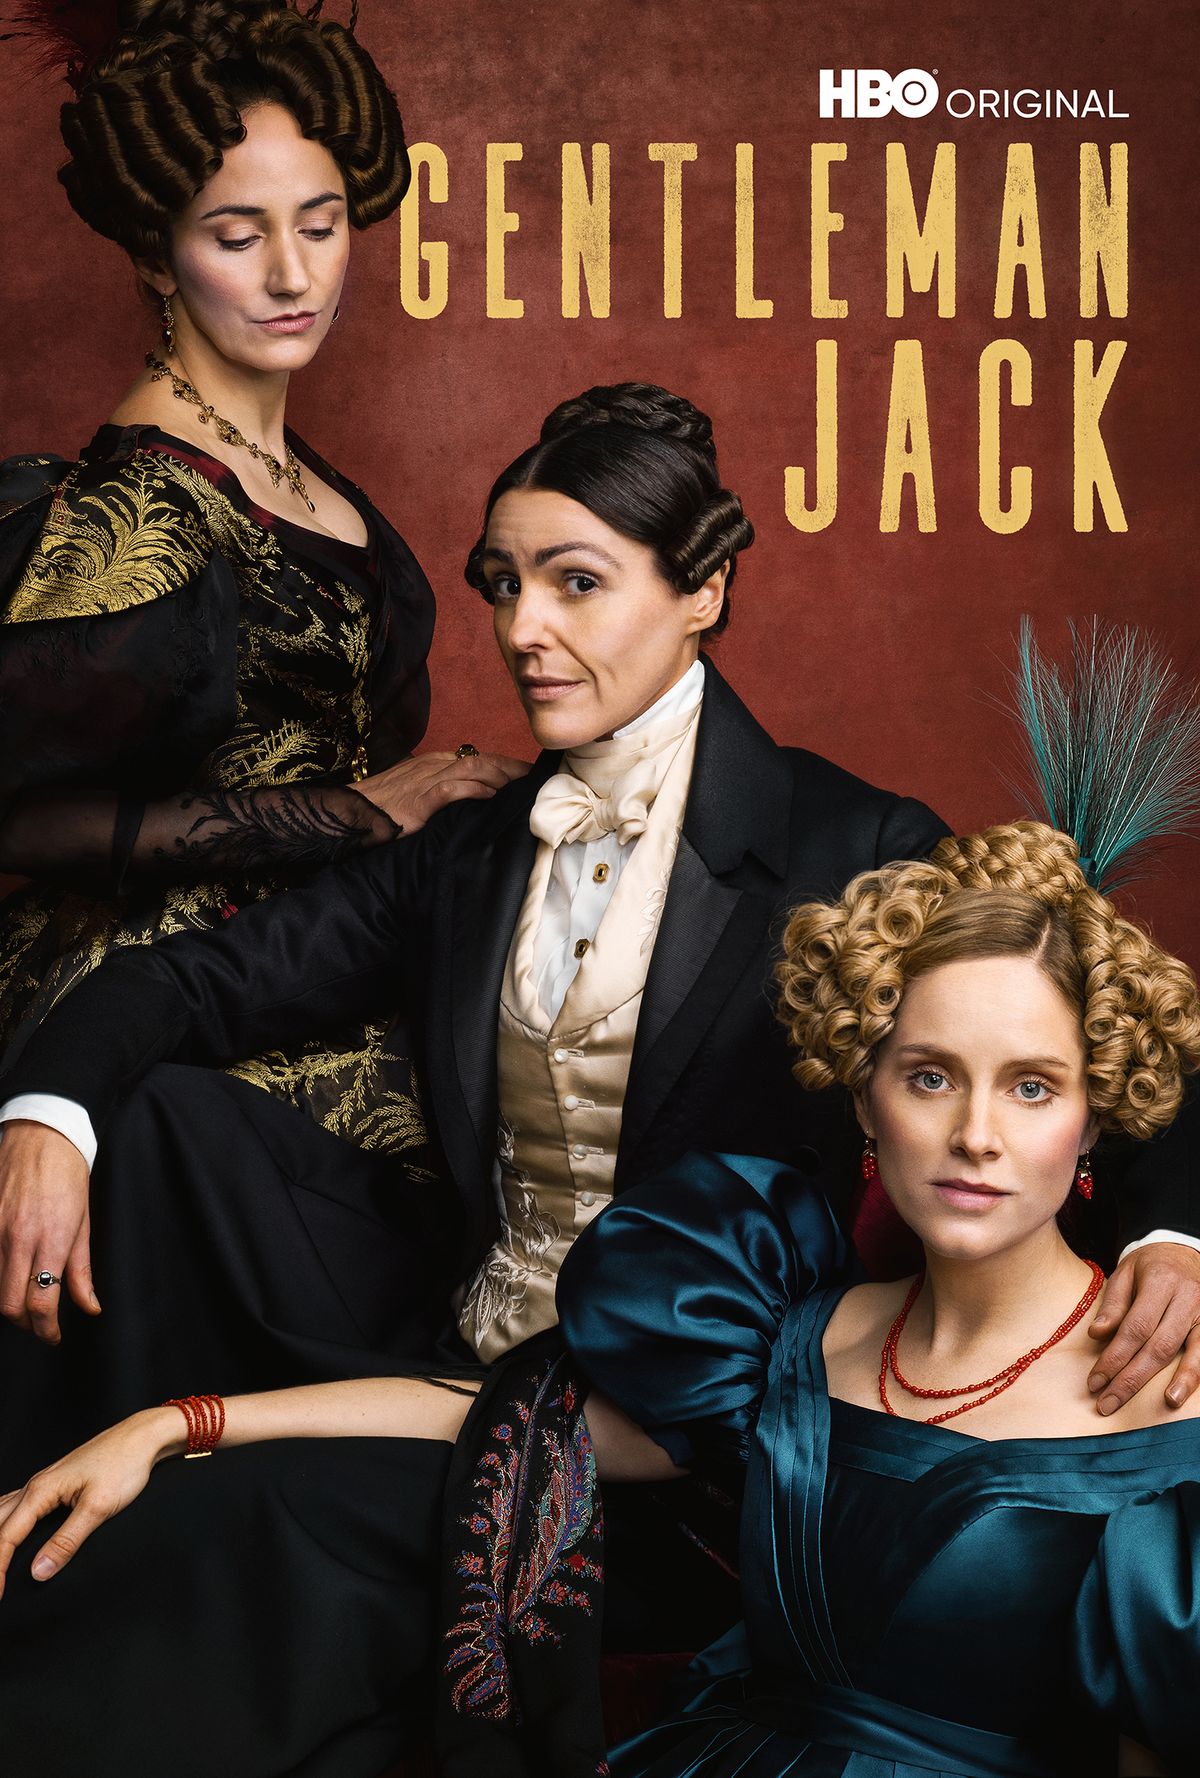 Die zweite Staffel der Historienserie "Gentleman Jack" ab August bei Sky